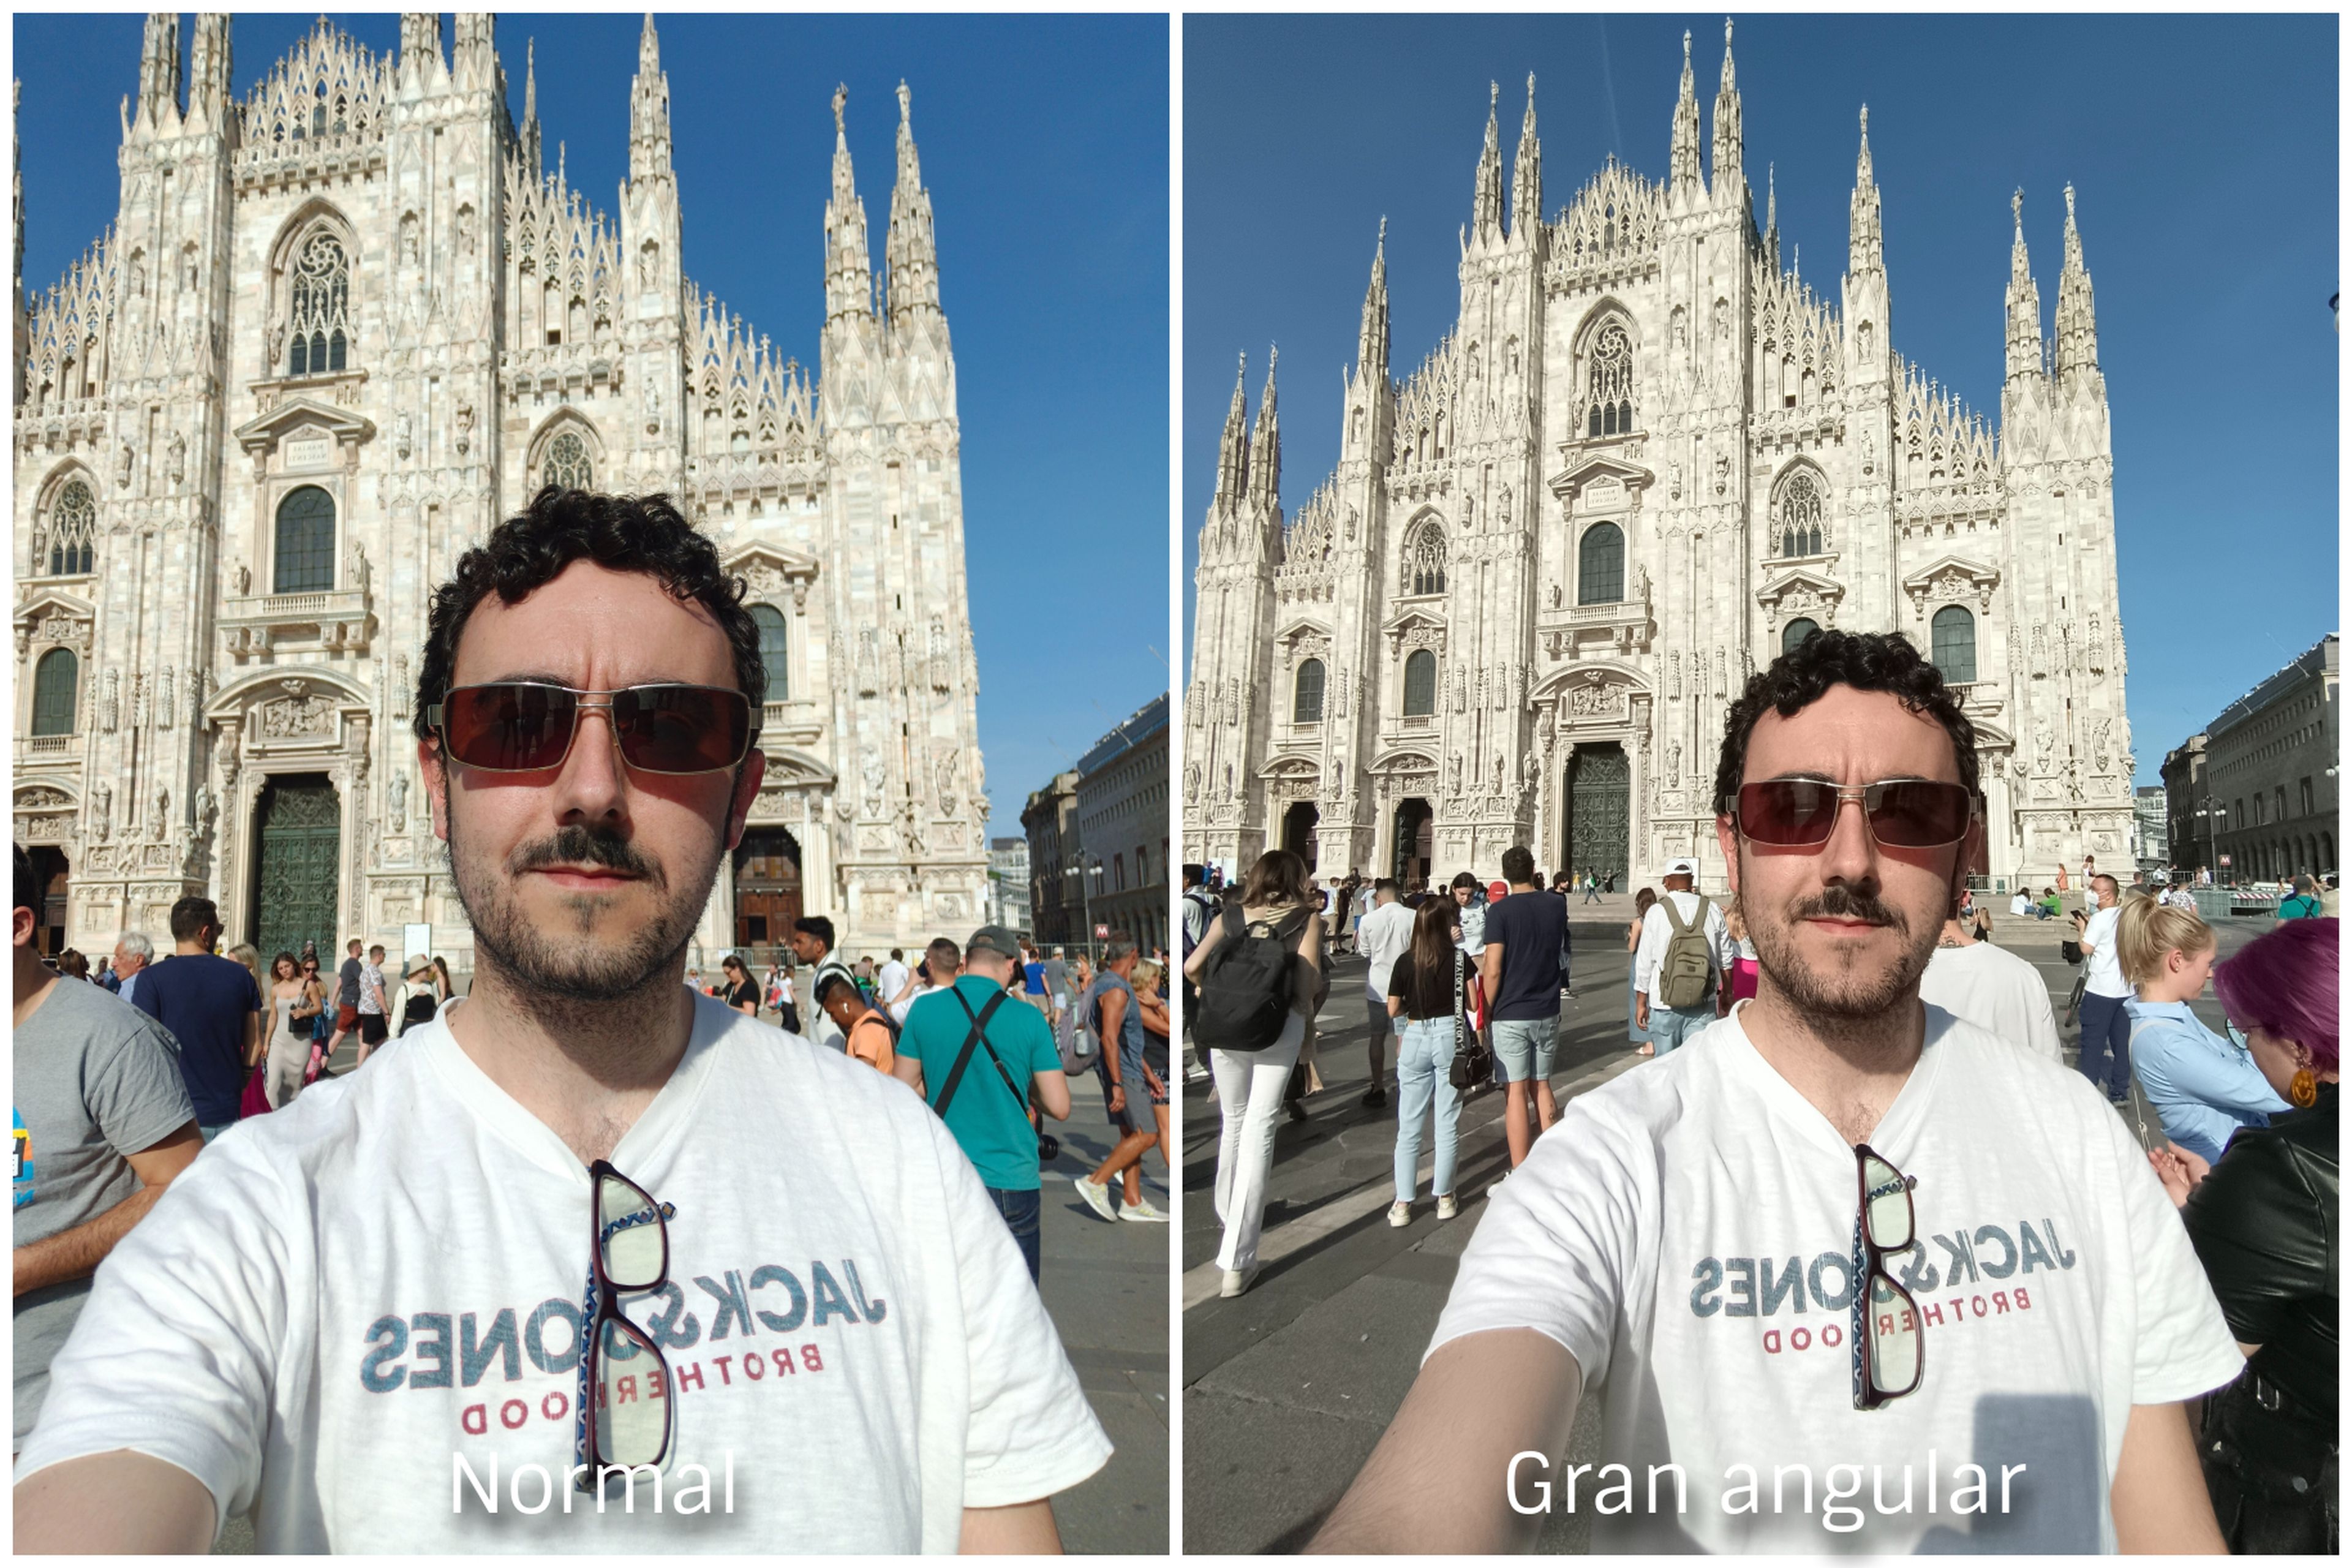 Despreocúpate sobre si salís todos en la foto o sobre si se ve el edificio entero frente al que posas, aunque sea tan grande como el Duomo de Milán.